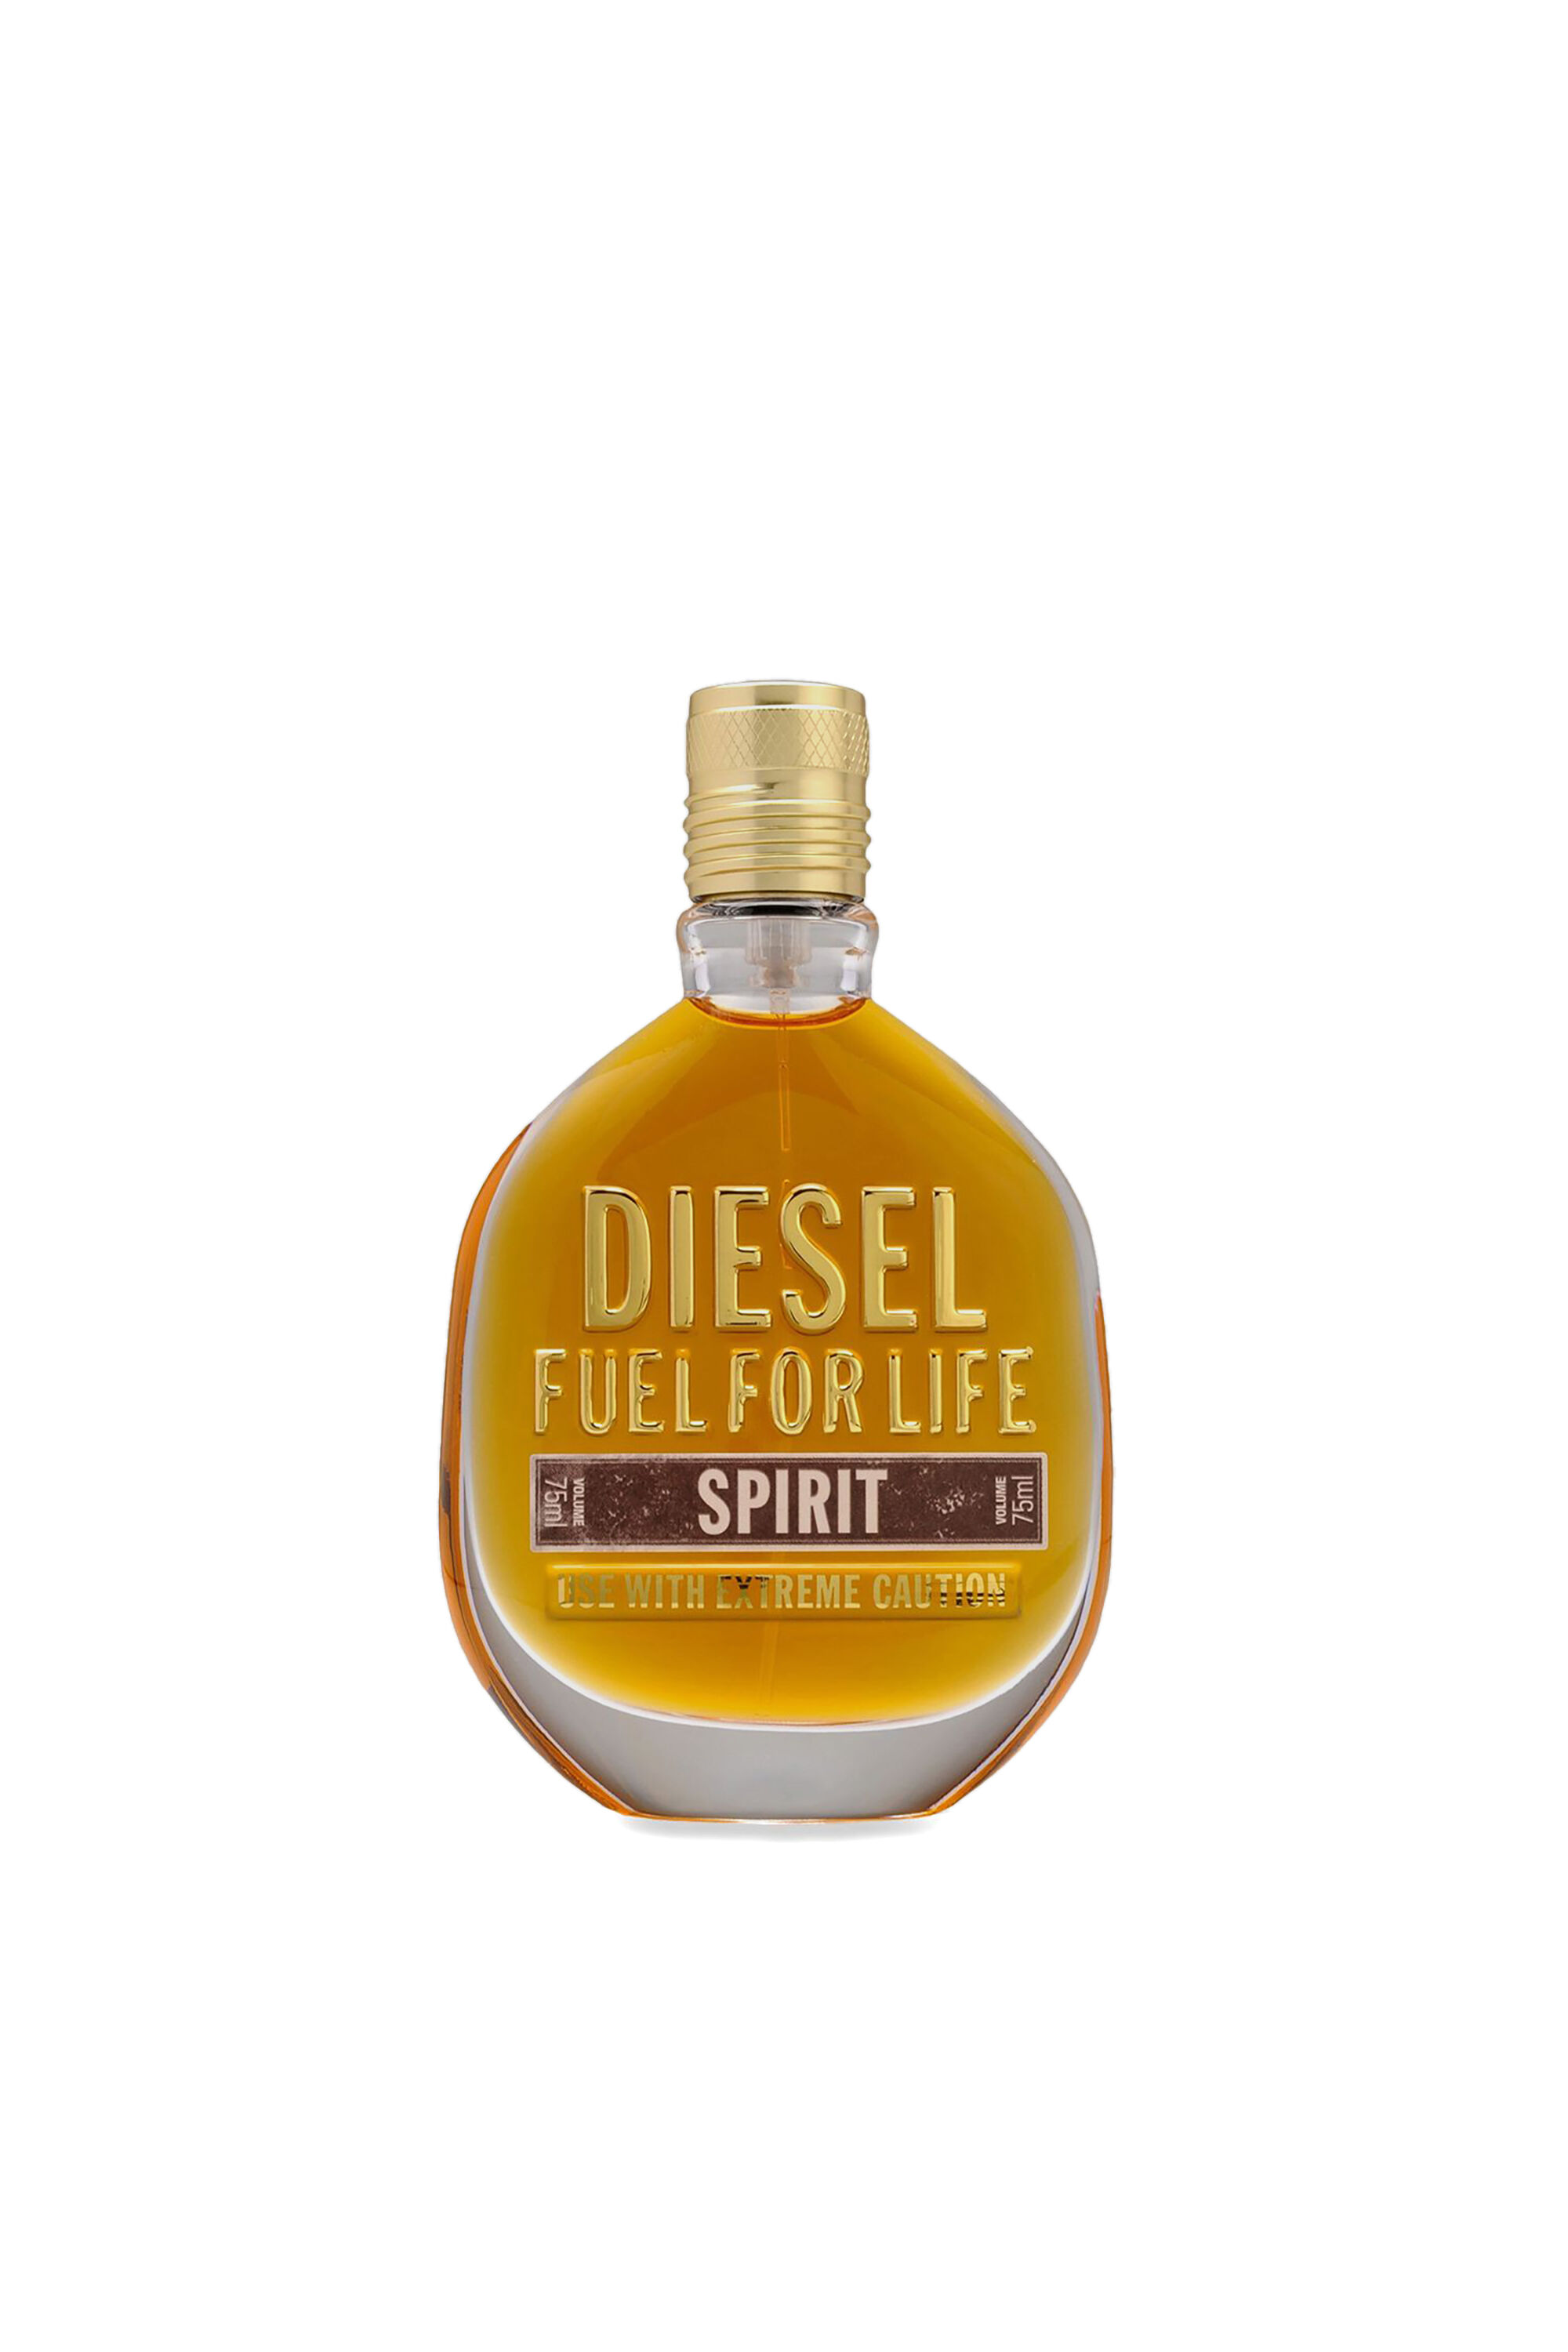 Diesel - FUEL FOR LIFE SPIRIT 75ML, Générique - Image 2